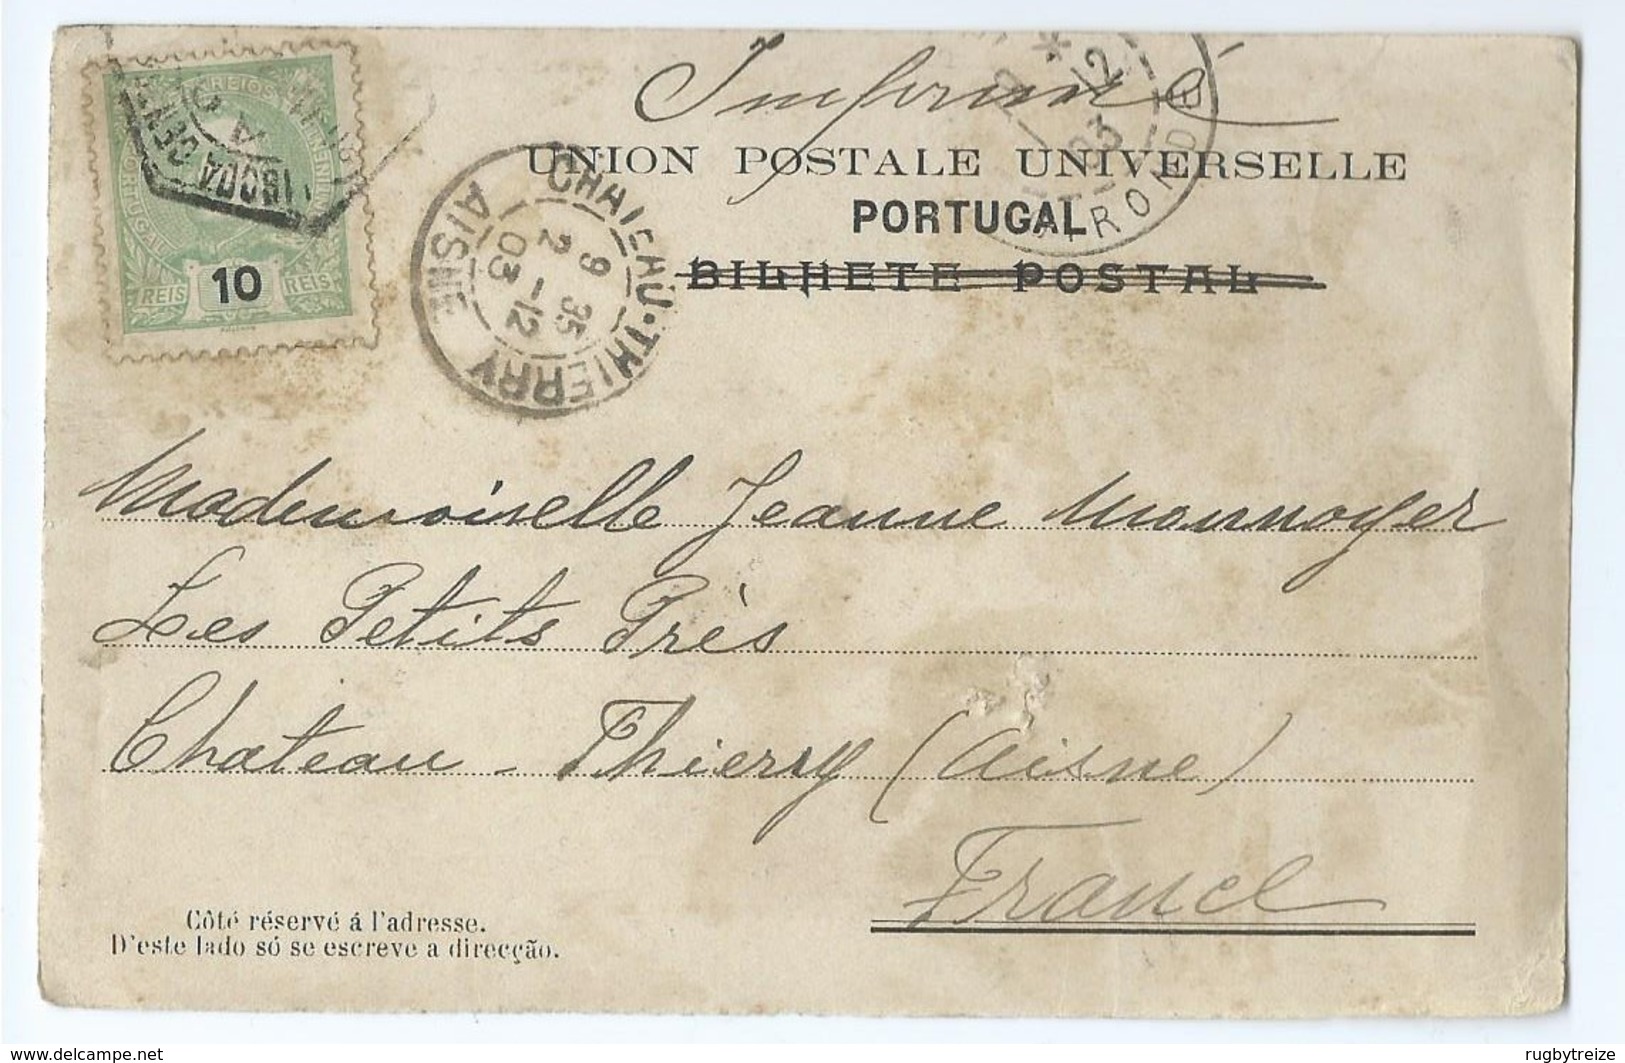 1731 - Devant De Carte Postale Imprimés Bilhete Postal Union Postale Universelle Pour Chateau Thierry Monnoyer - Postmark Collection